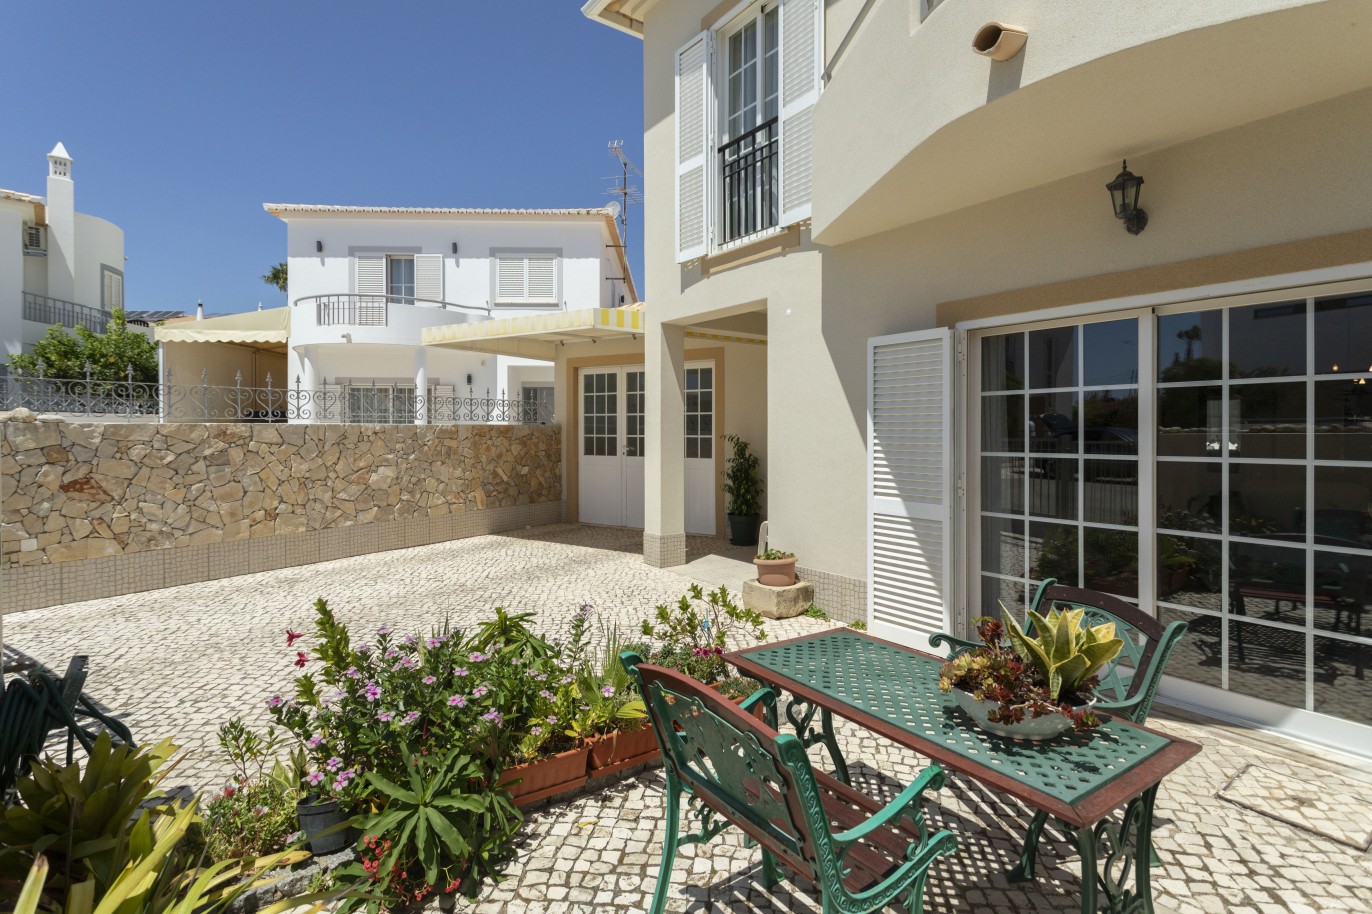 Villa de 3 dormitorios en venta en Porto de Mós, Algarve_233244